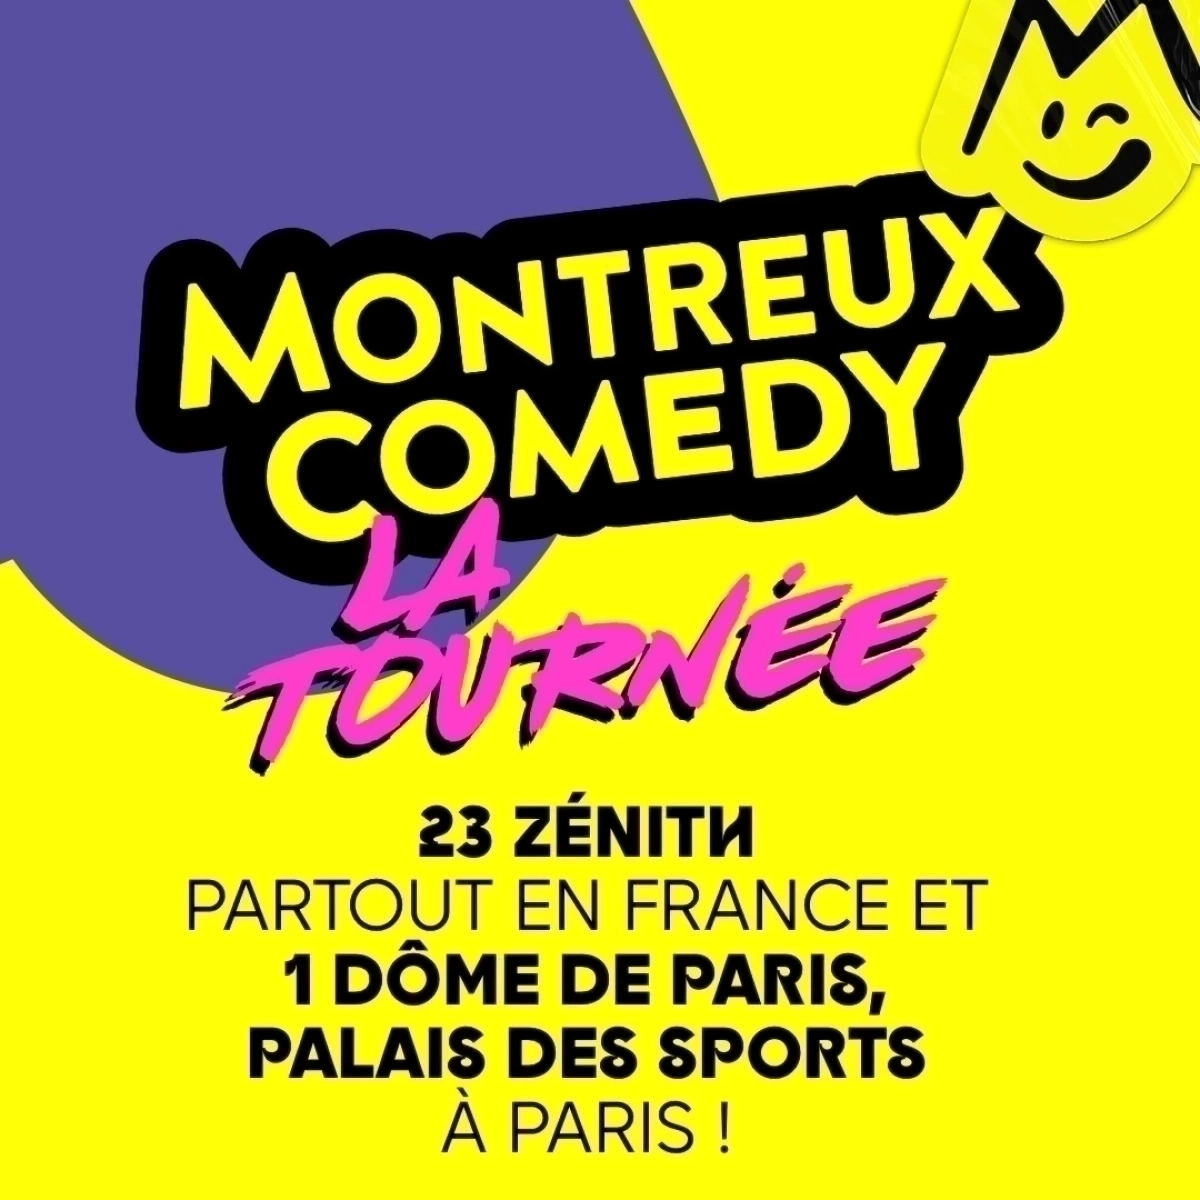 Montreux Comedy - La Tournee in der Zenith Saint Etienne Tickets